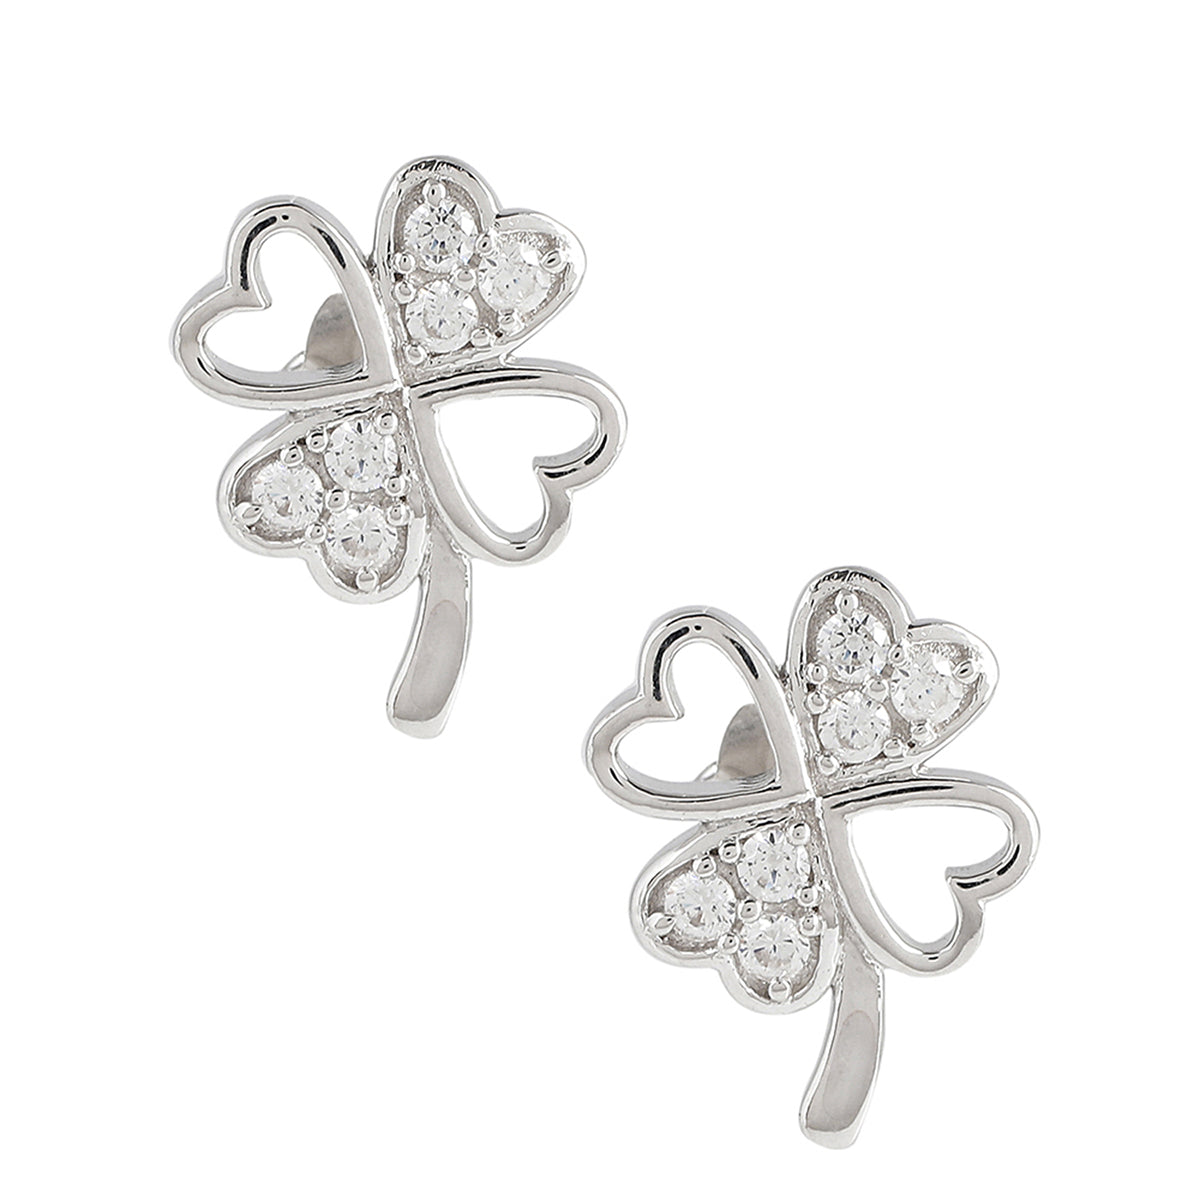 925 Sterling Silver Silver Flower Stud Earrings